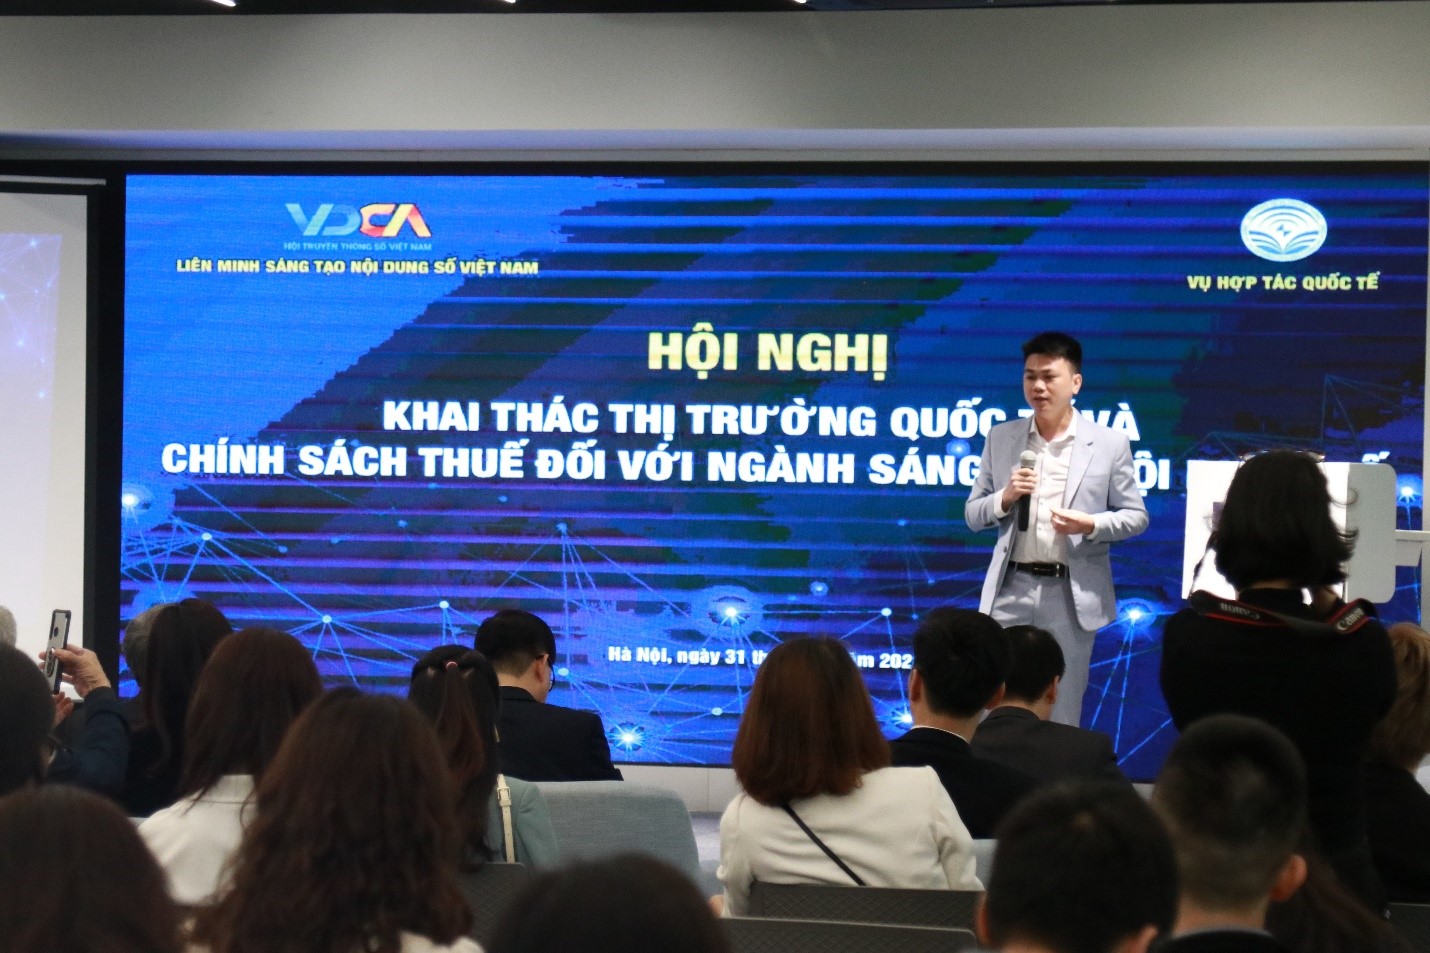 Ông Nguyễn Việt Tiệp, Chuyên viên cao cấp về kế toán thuế (đại diện cho Liên minh Sáng tạo Nội dung số - DCCA) đã phân tích và đưa ra các kiến nghị về thuế trong ngành sáng tạo nội dung số.